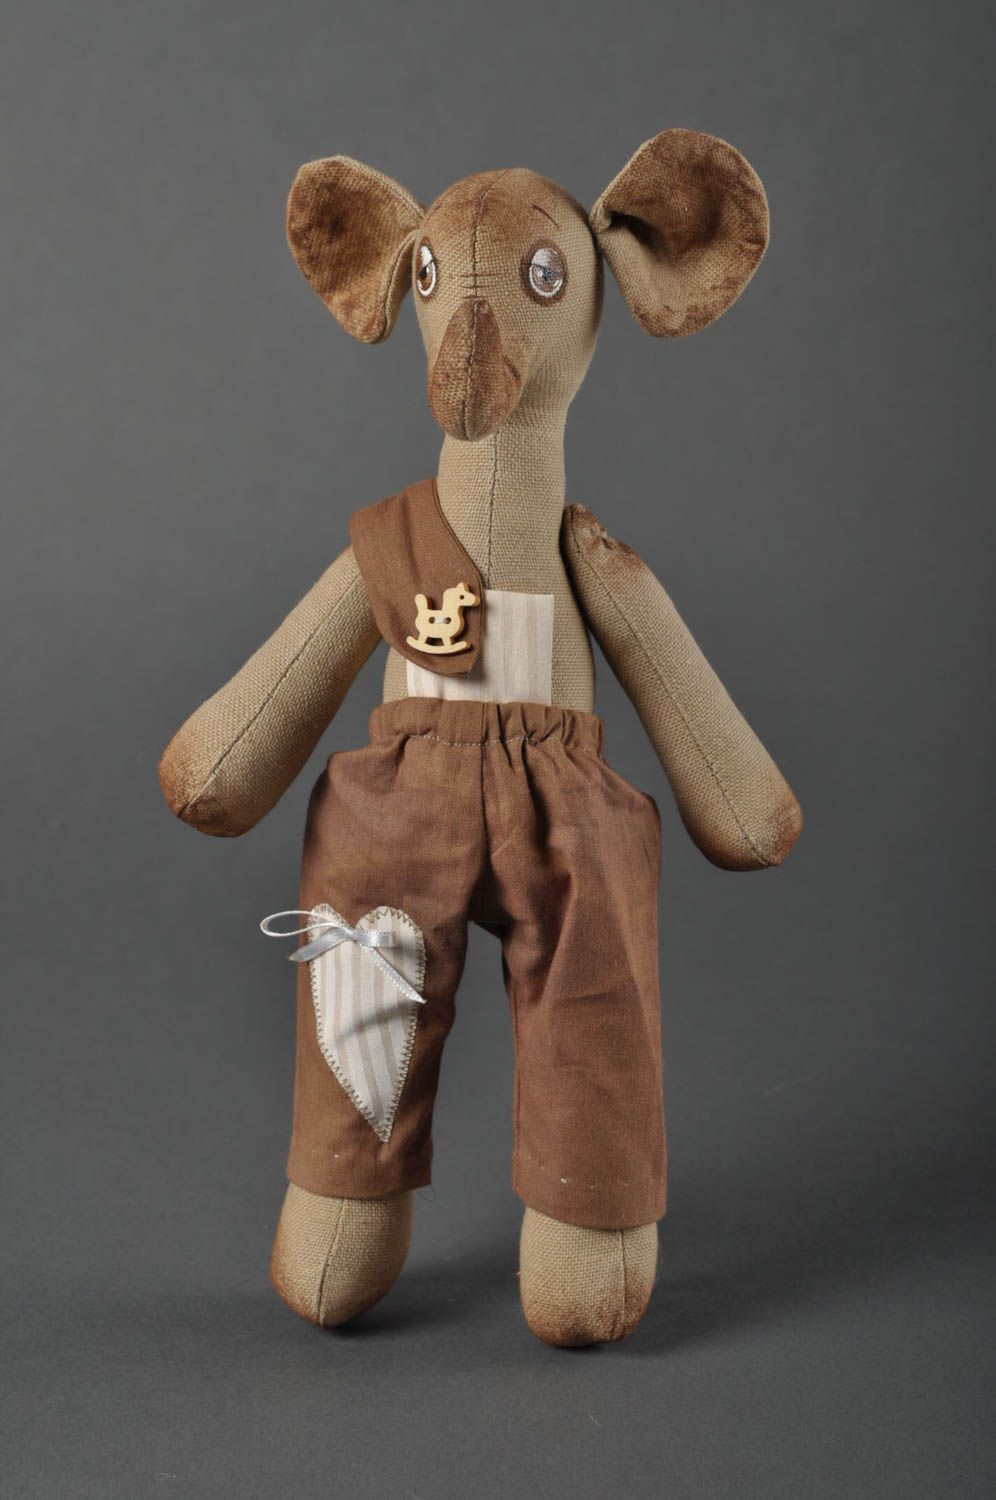 Игрушка слоник ручной работы детская игрушка расписанная акрилом мягкая игрушка фото 1